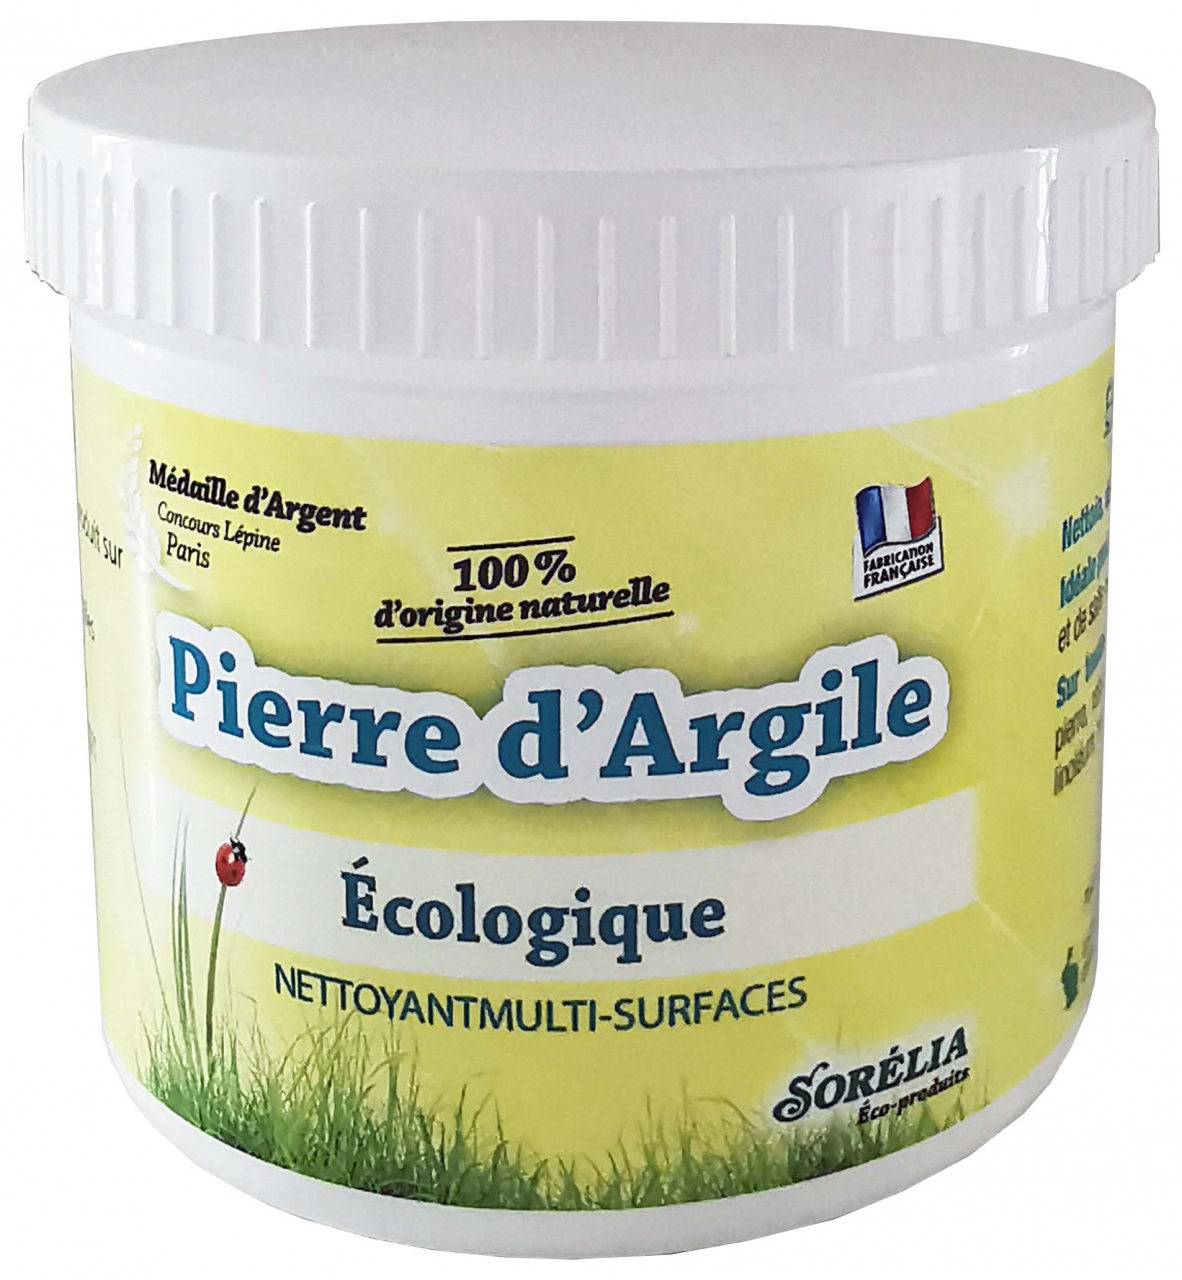 Pierre D'argile Multi-surfaces